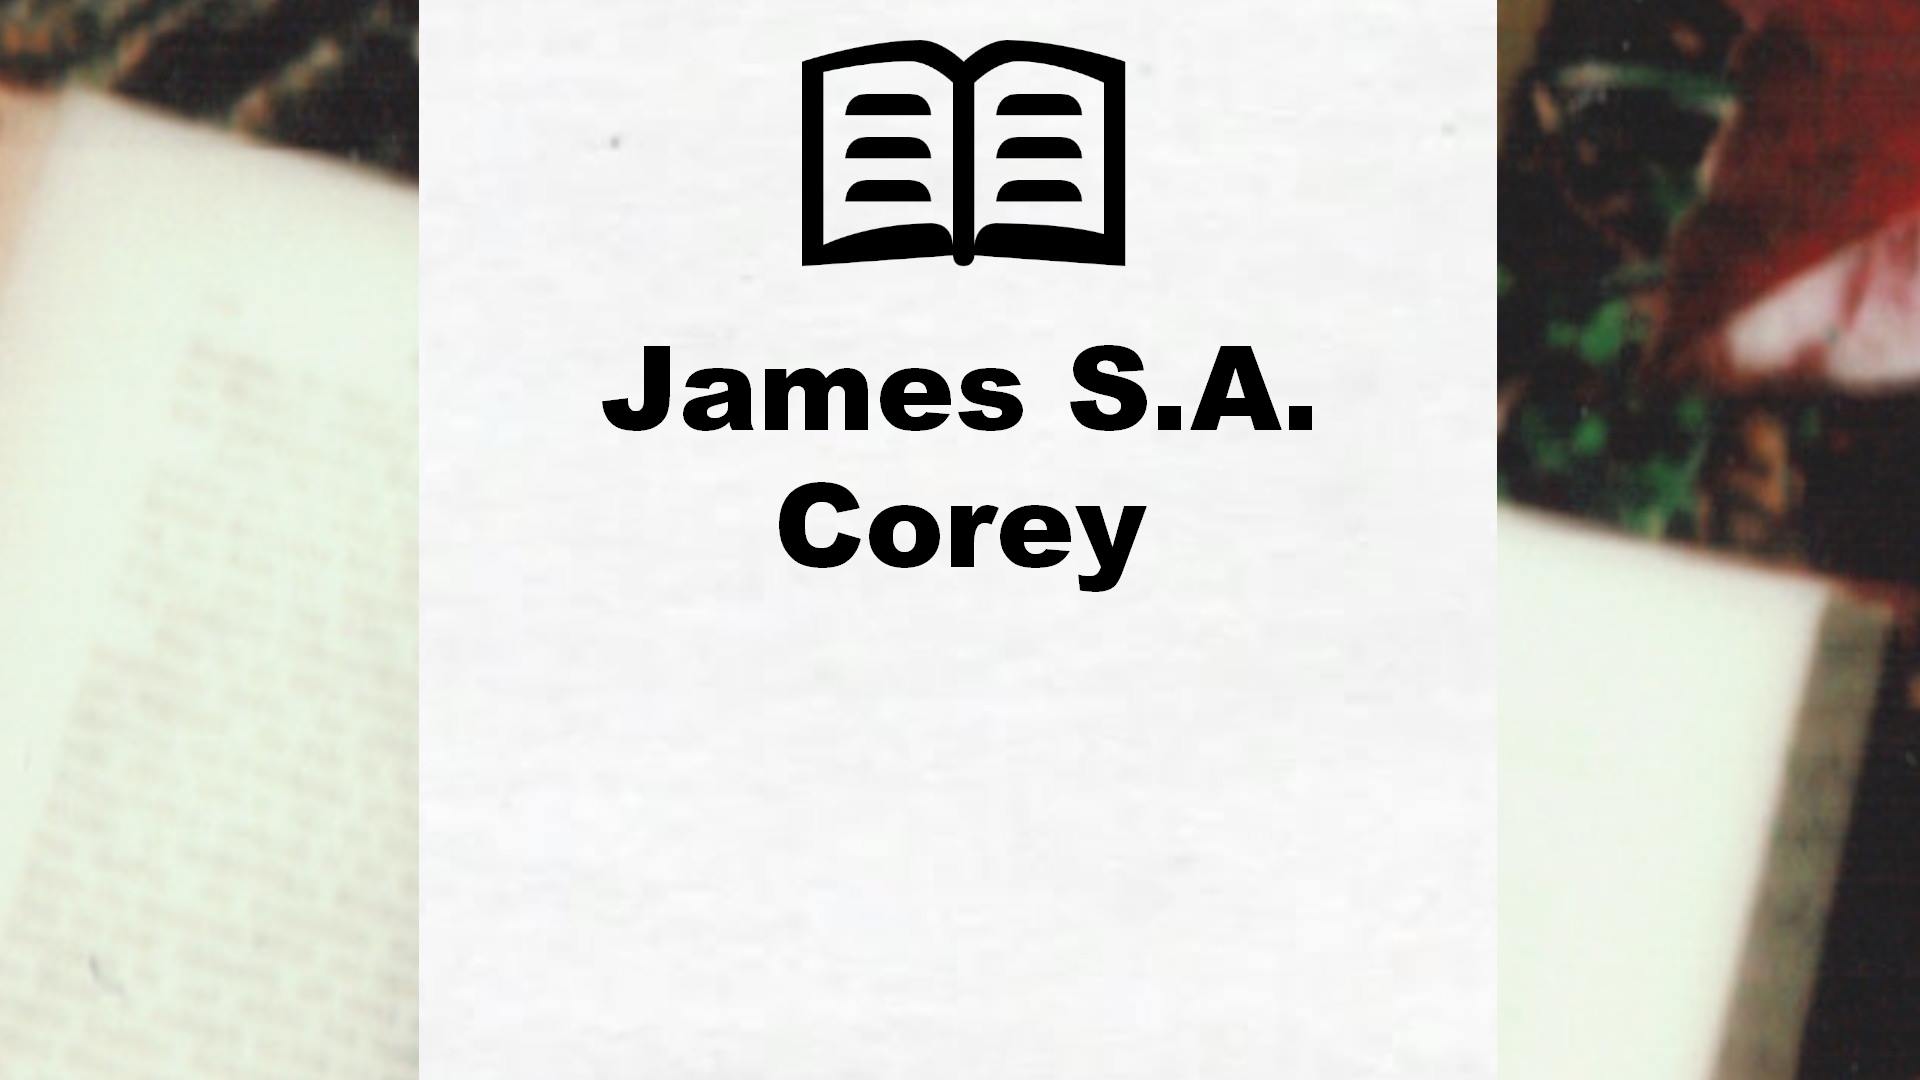 Livres de James S.A. Corey